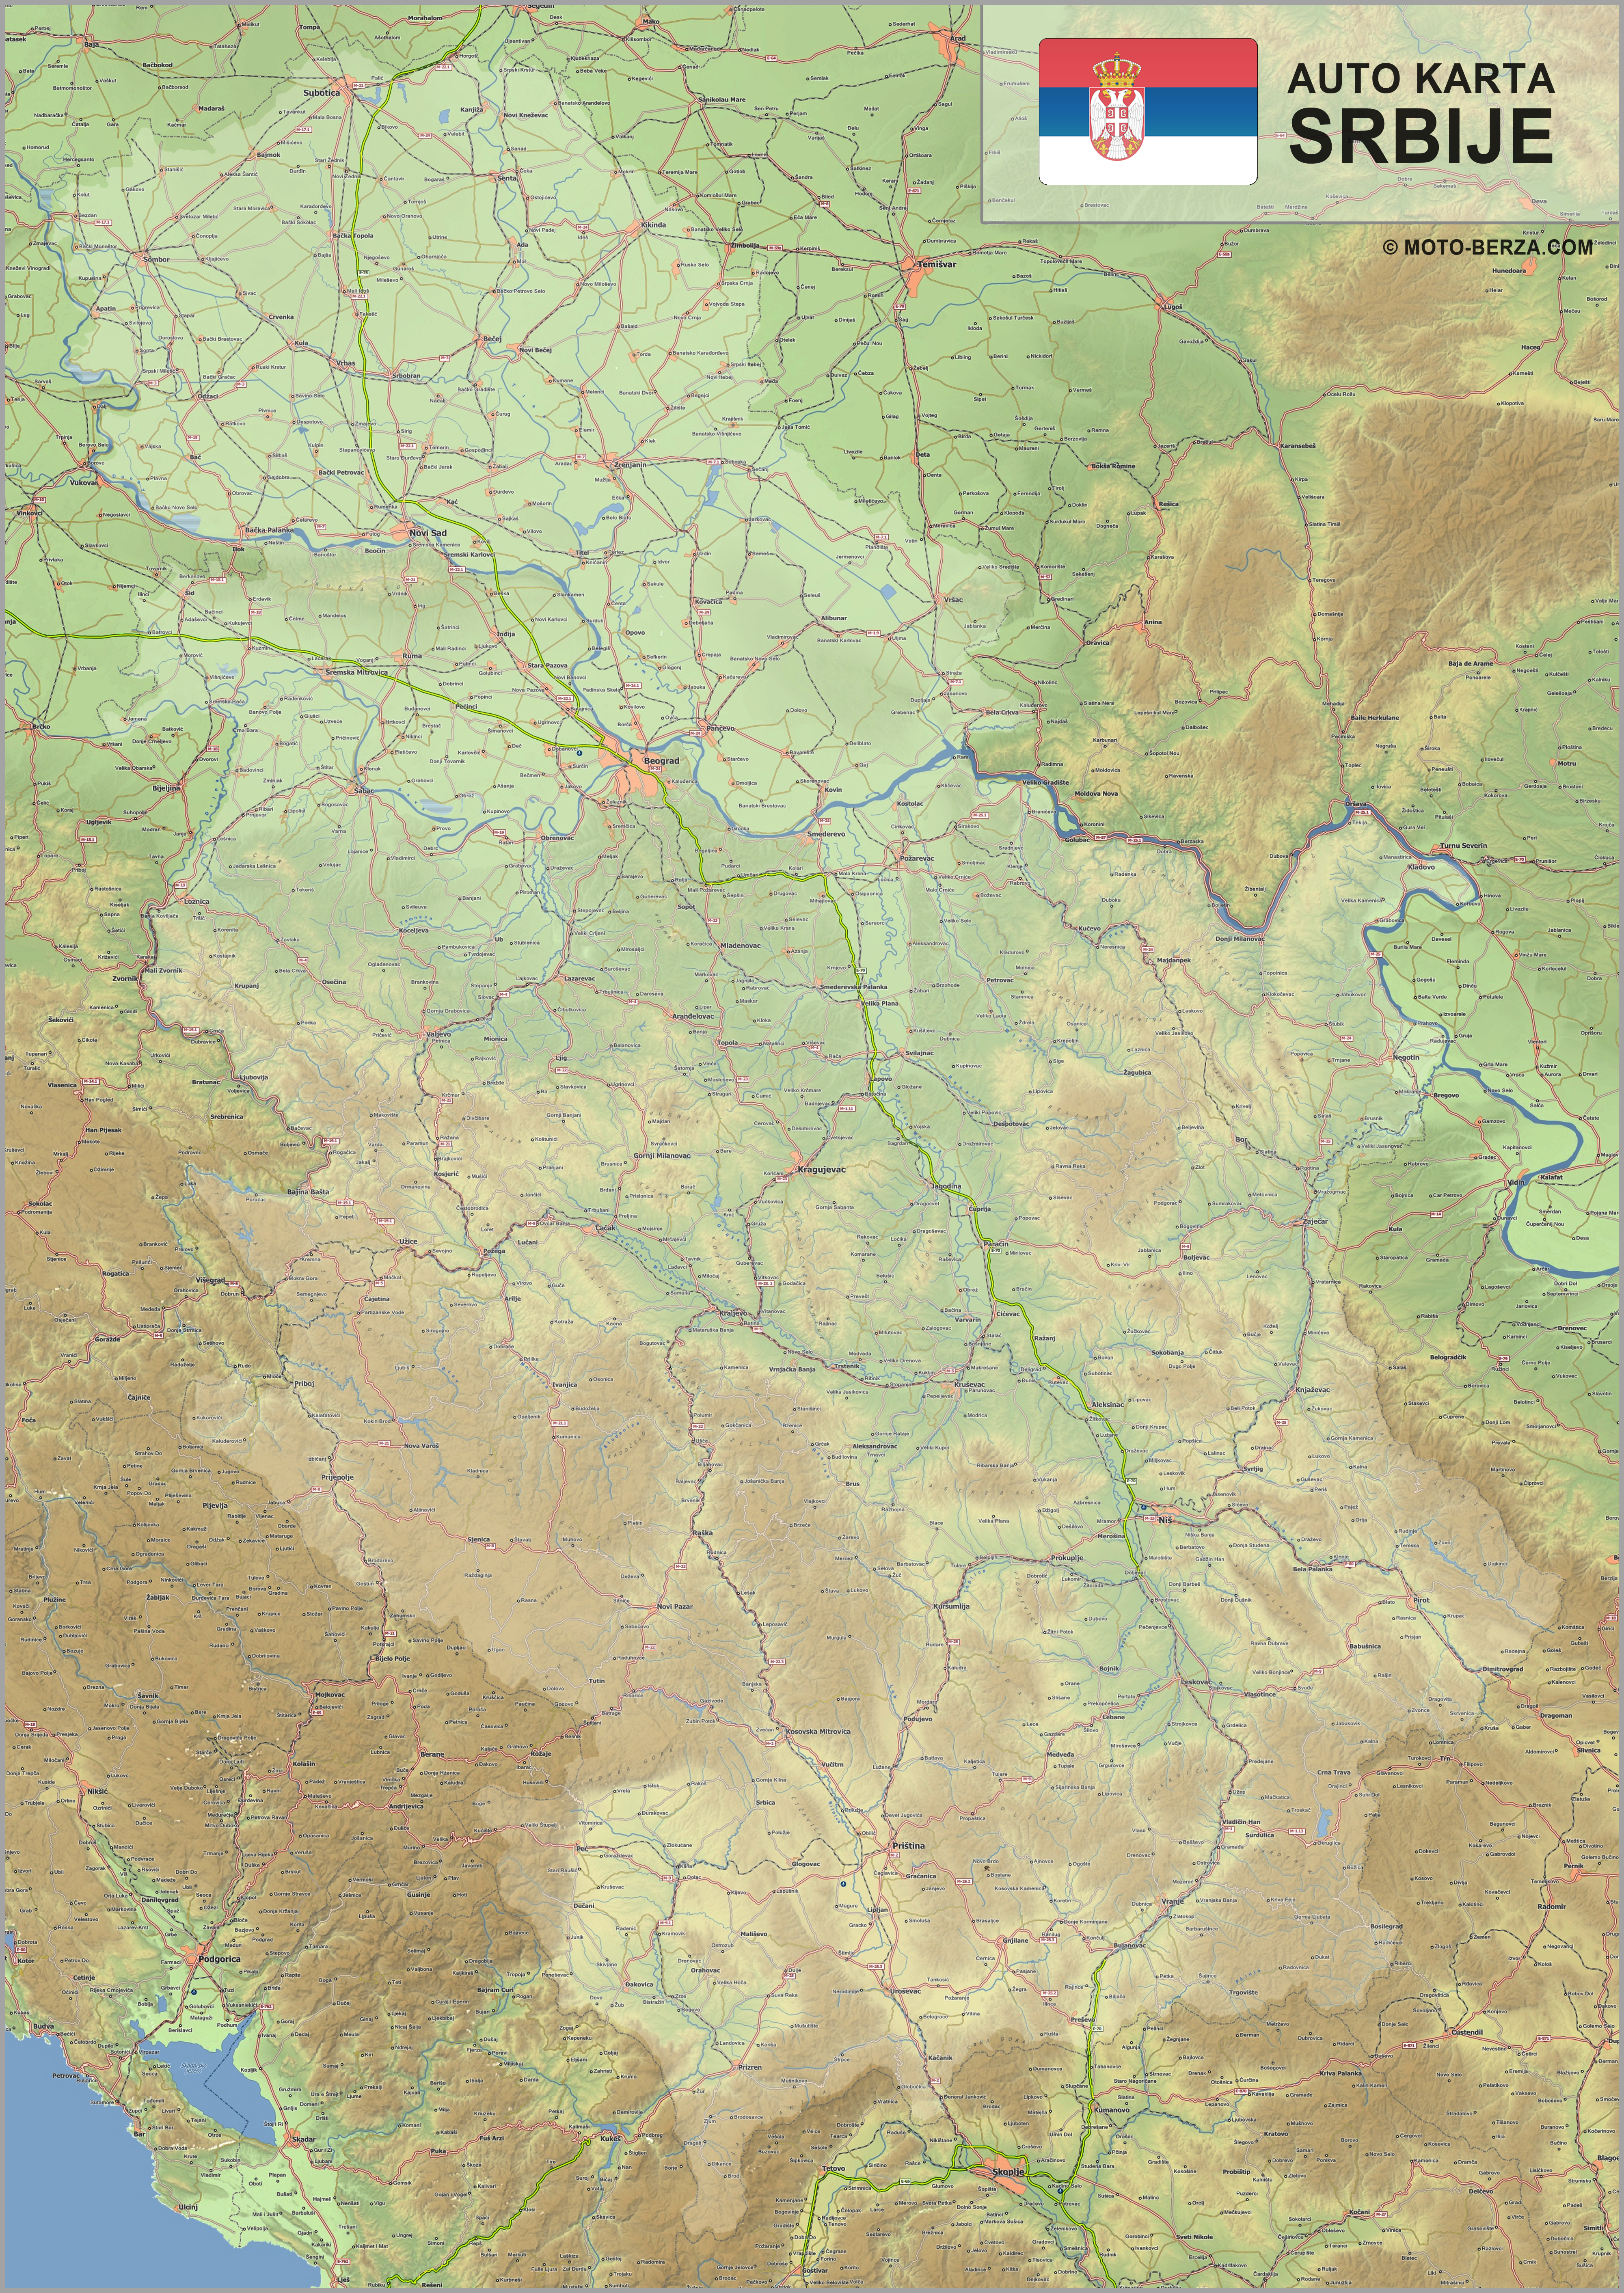 geo mapa srbija Mapa srbije   Auto karta Srbije   Geografska karta sa putevima geo mapa srbija